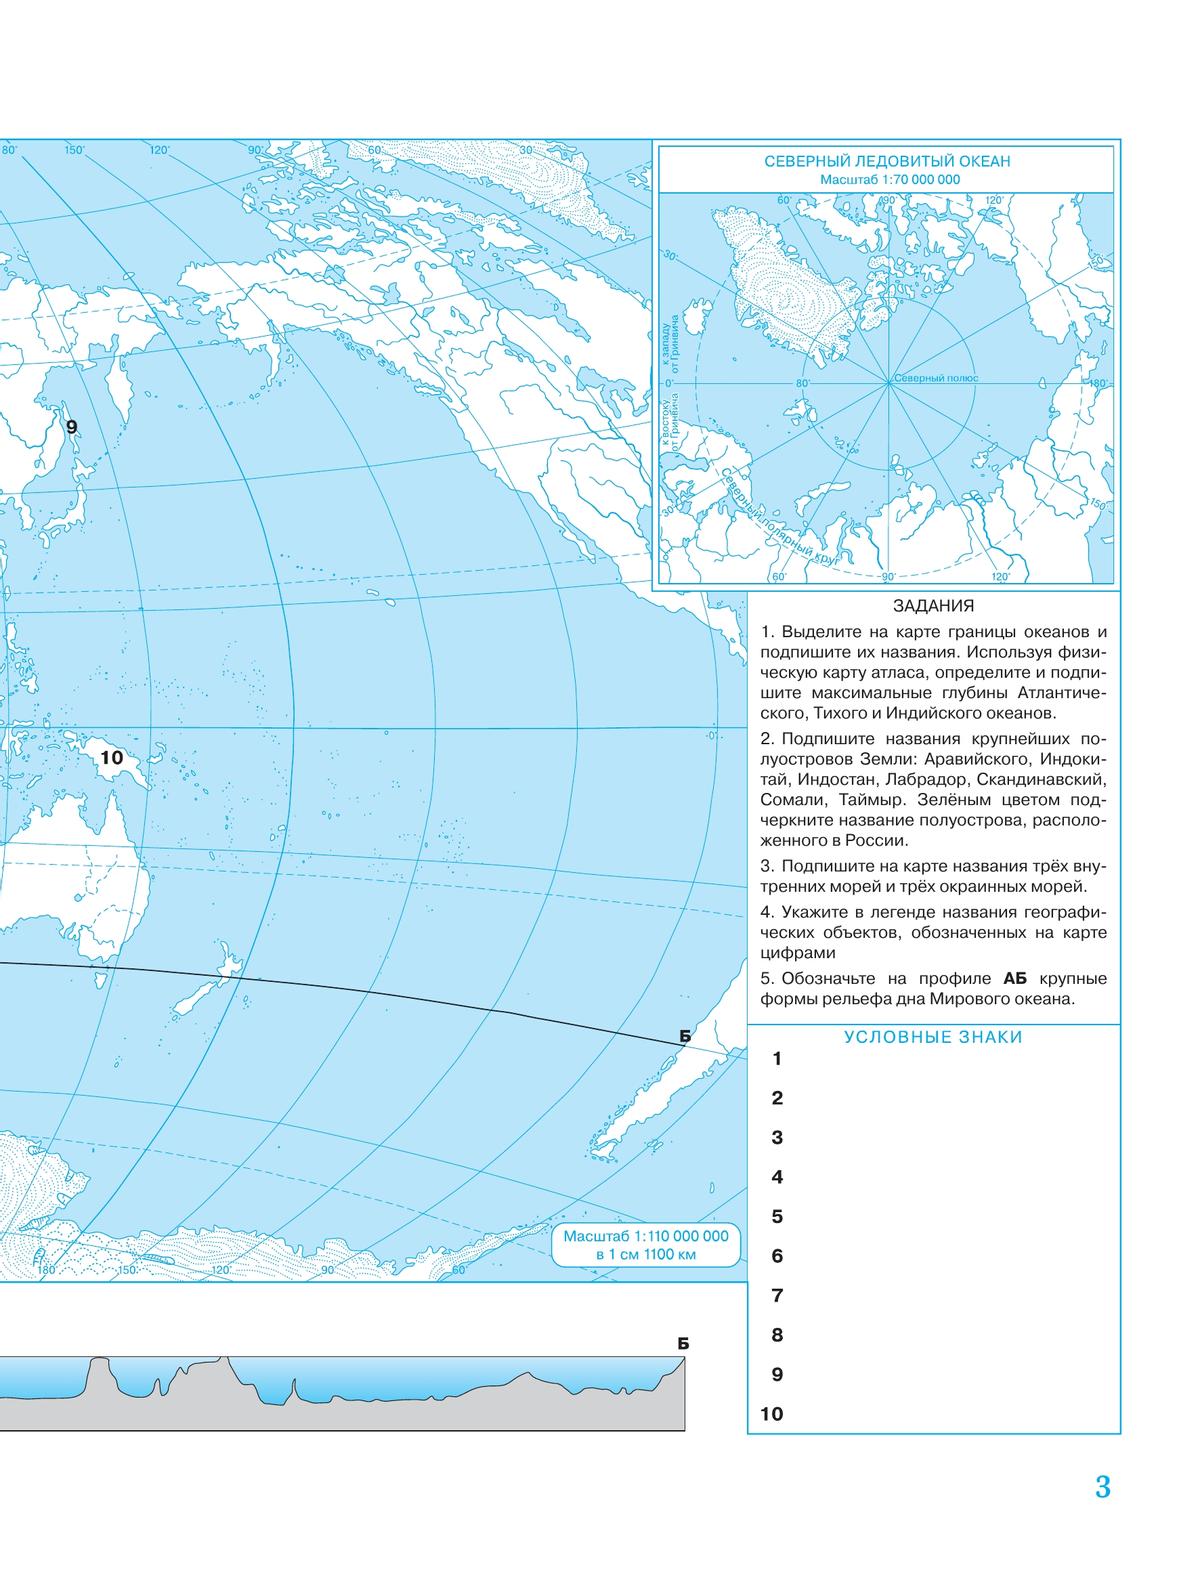 Решебник, контурные карты по Географии 6 класс – Кольмакова | Супер Решеба